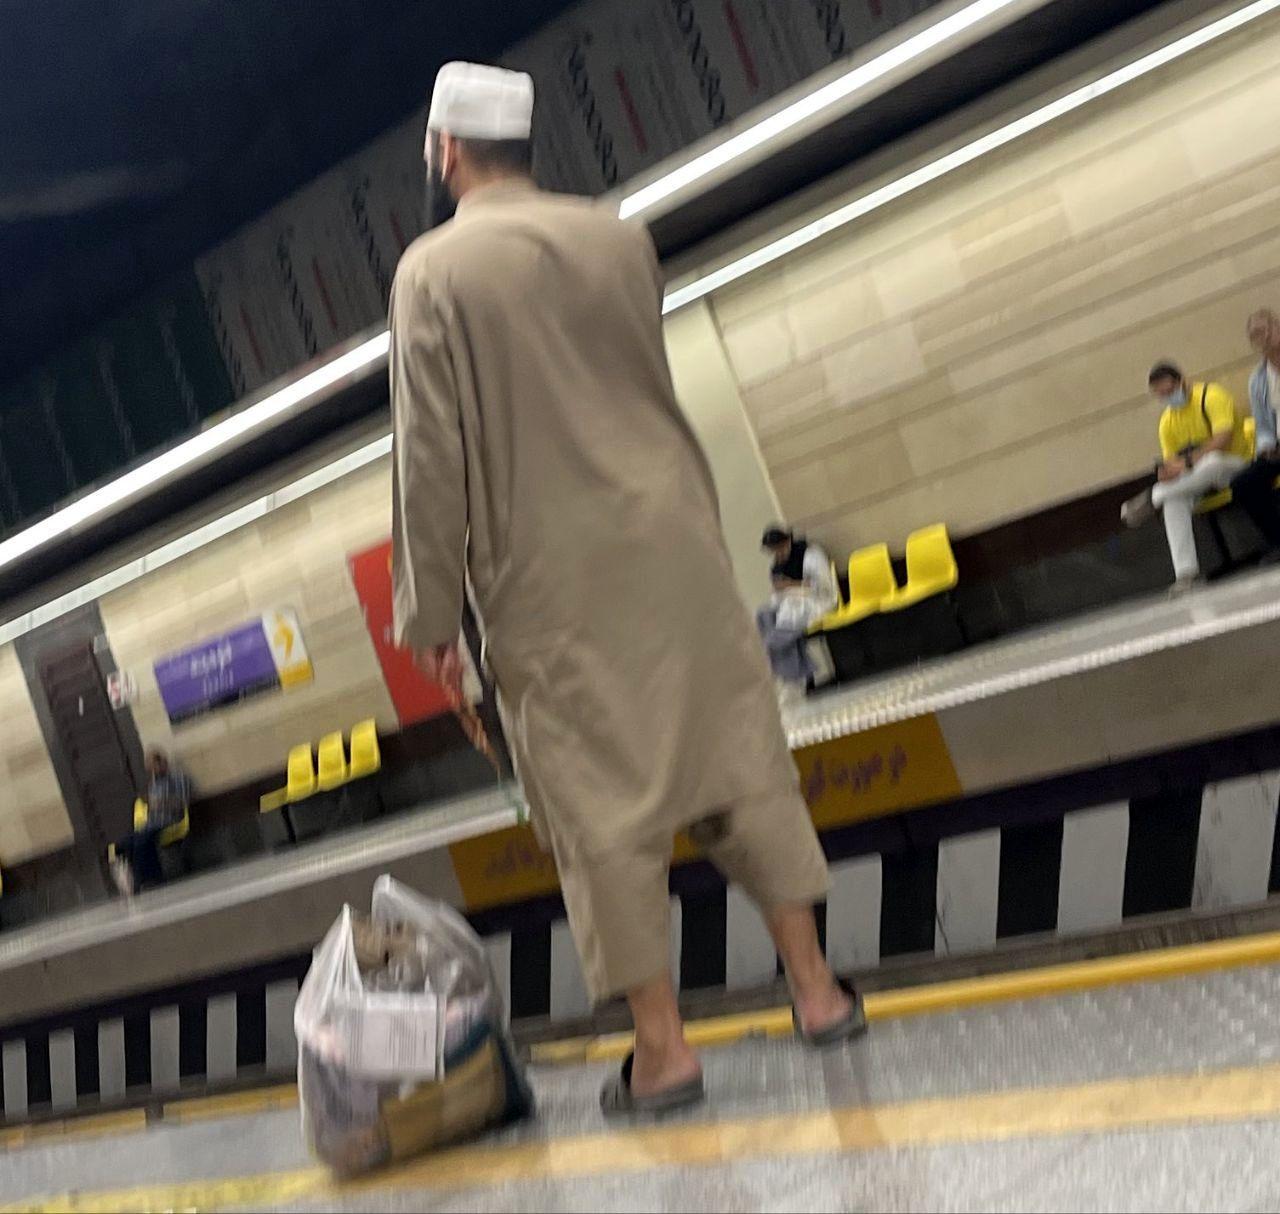 درگیری وحشتناک مسافران افغان در متروی تهران جنجال به پا کرد + عکس
